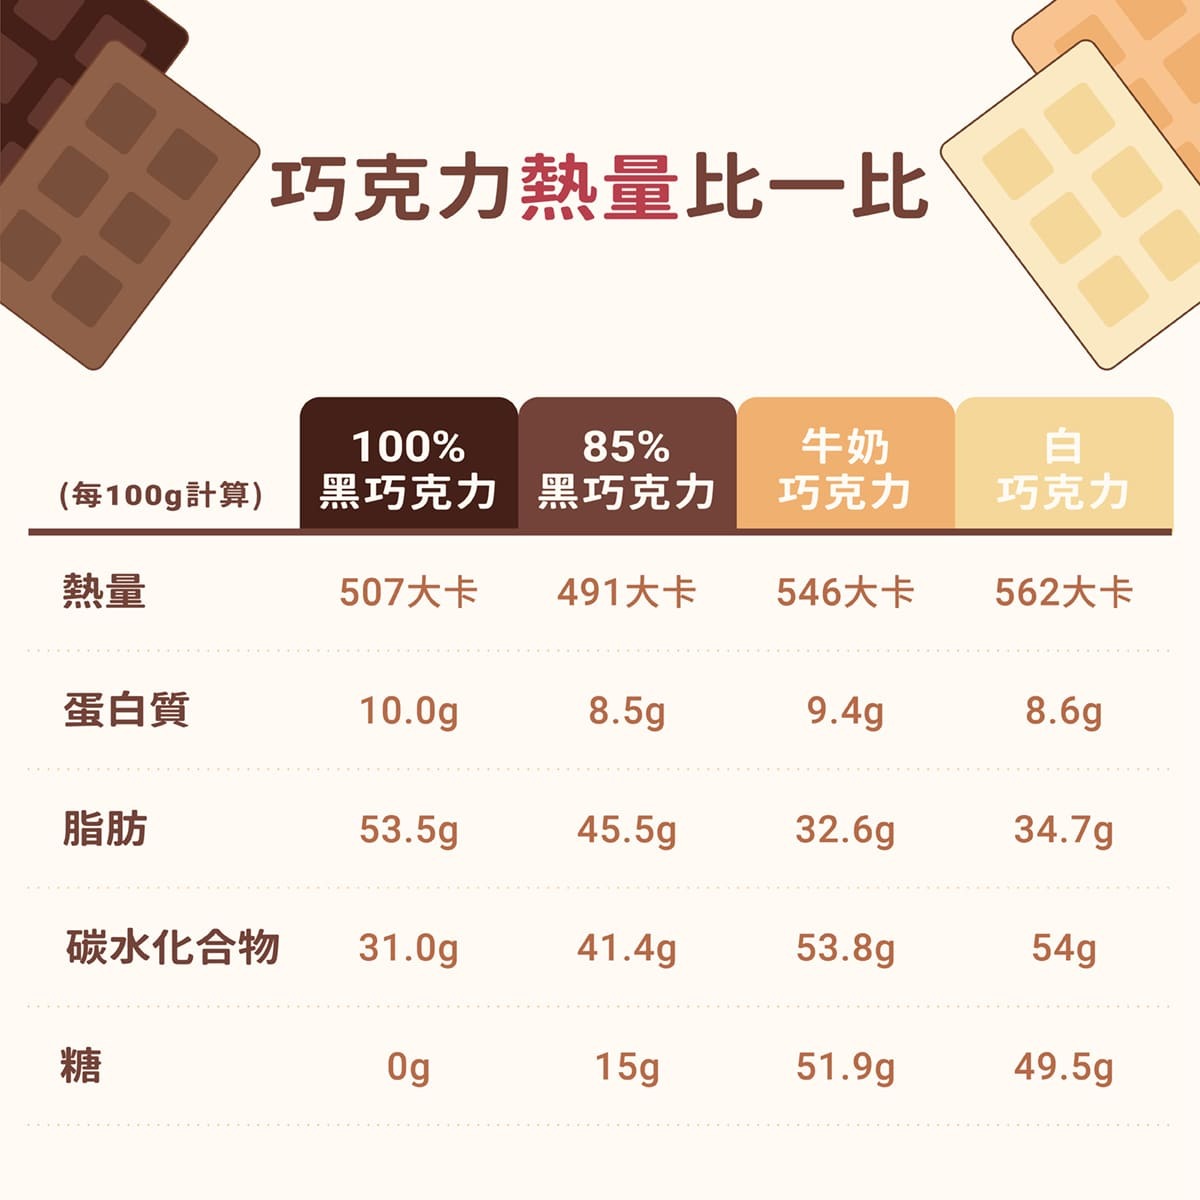 不同種類巧克力熱量比較-黑巧克力-牛奶巧克力-白巧克力